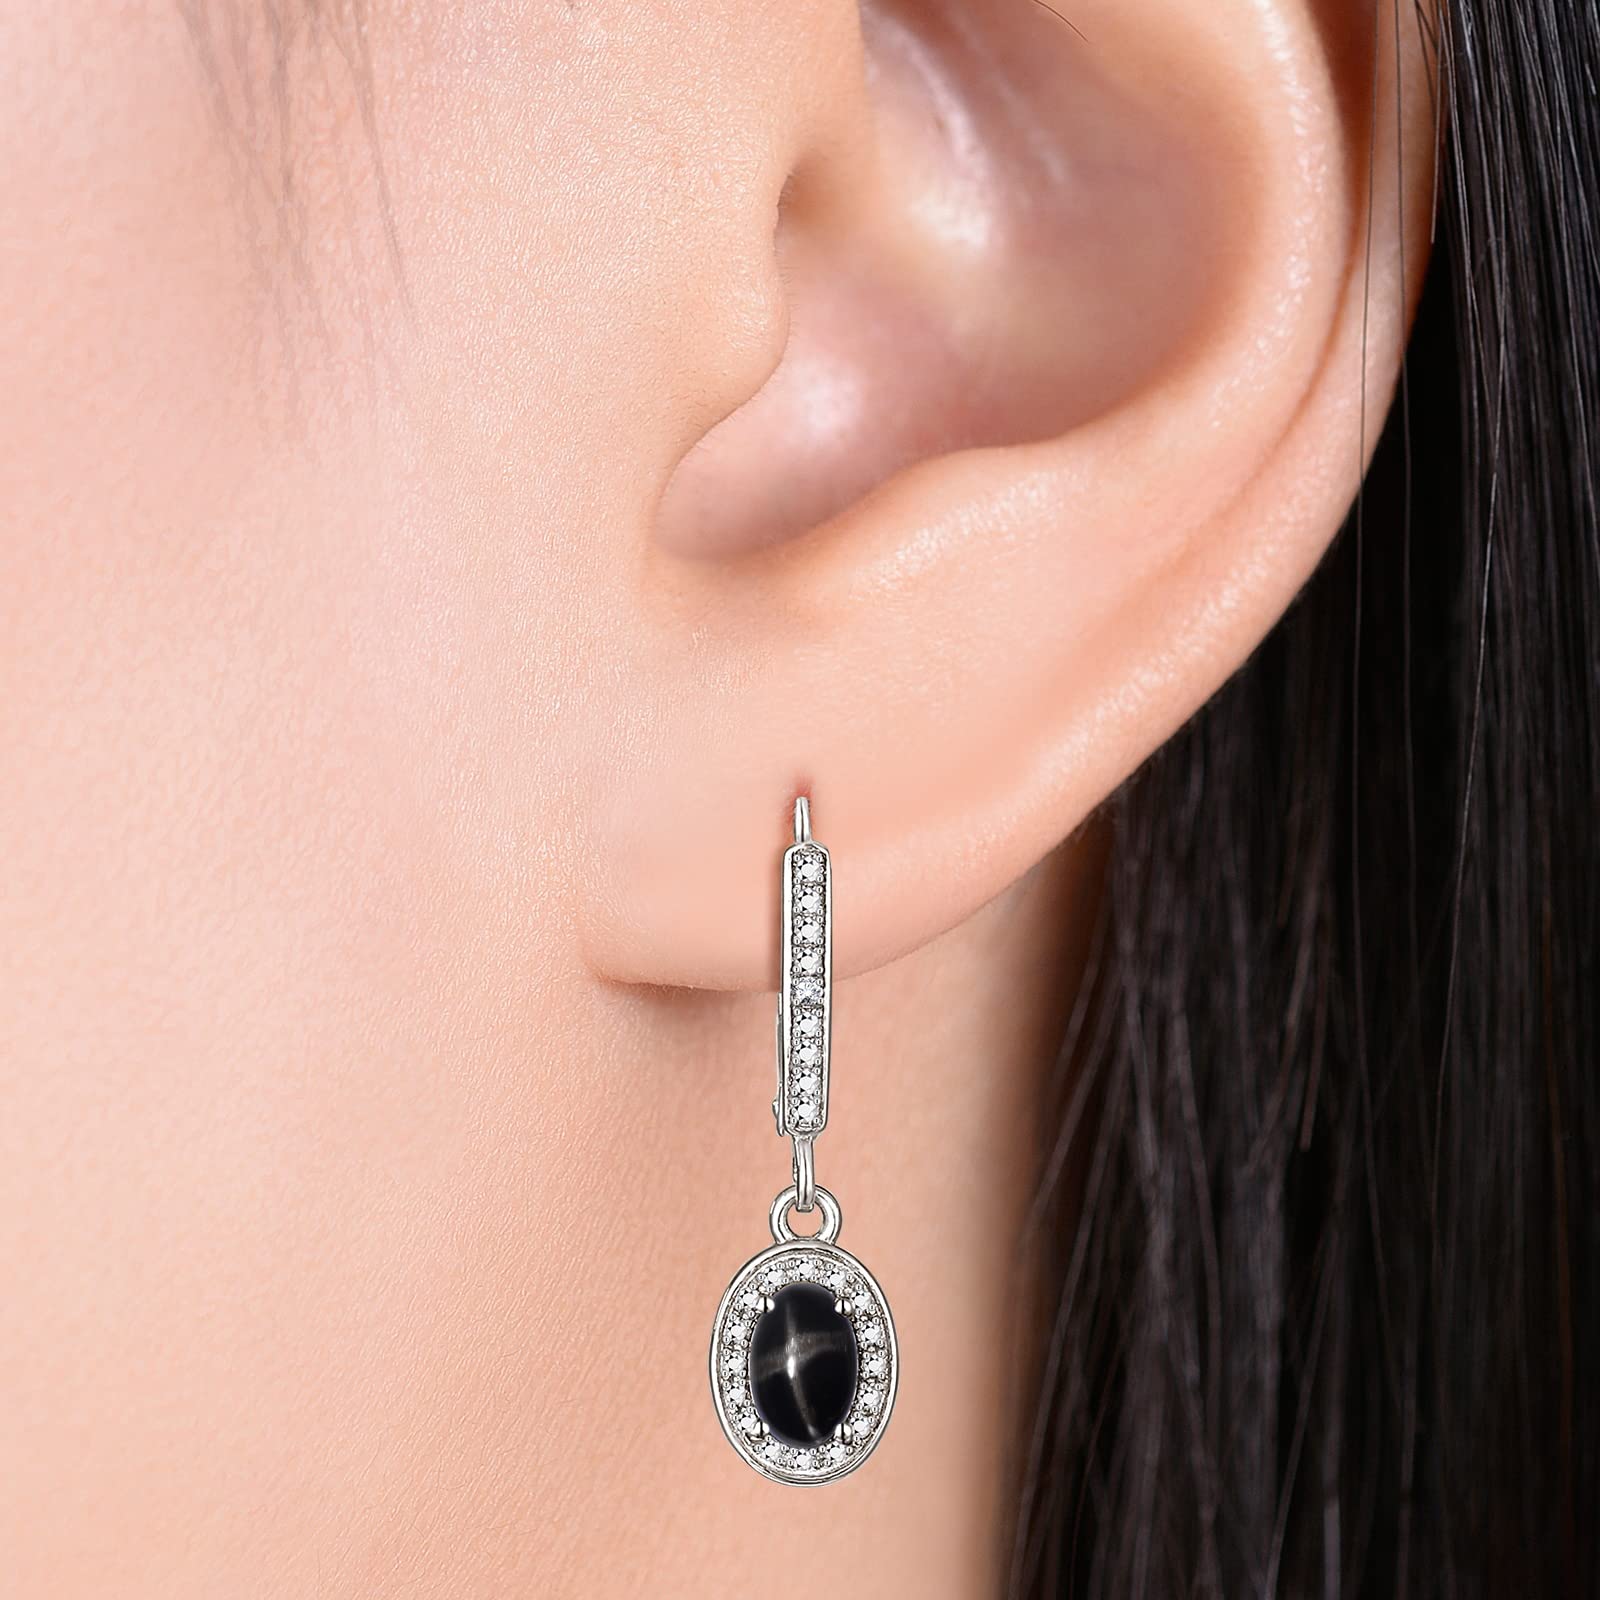 RYLOS Earrings For Women 14K Gold Earrings with Oval Shape Gemstone & Genuine Diamonds Dangling Earrings 6X4MM Birthstone Earring Color Stone Jewelry For Women Gold Earrings